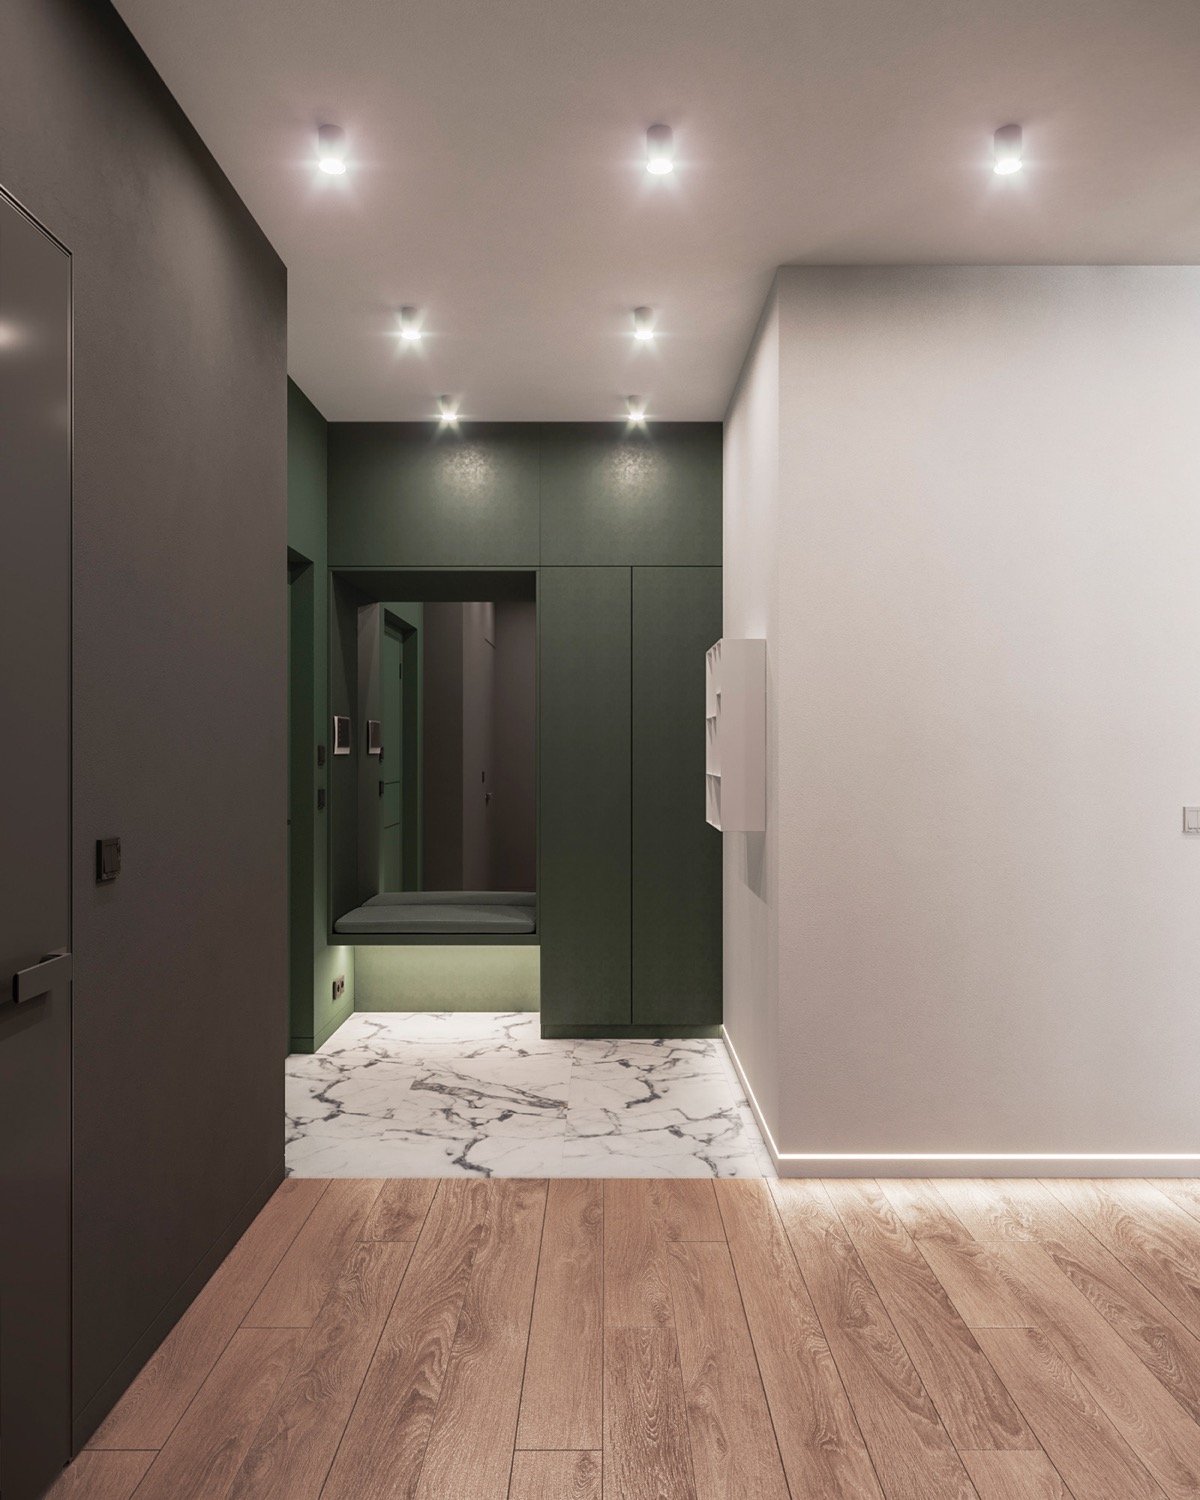 Lối vào căn hộ có thiết kế đơn giản, gọn gàng và tiện dụng với băng ghế ngồi tích hợp tủ kệ màu xanh lá cây.